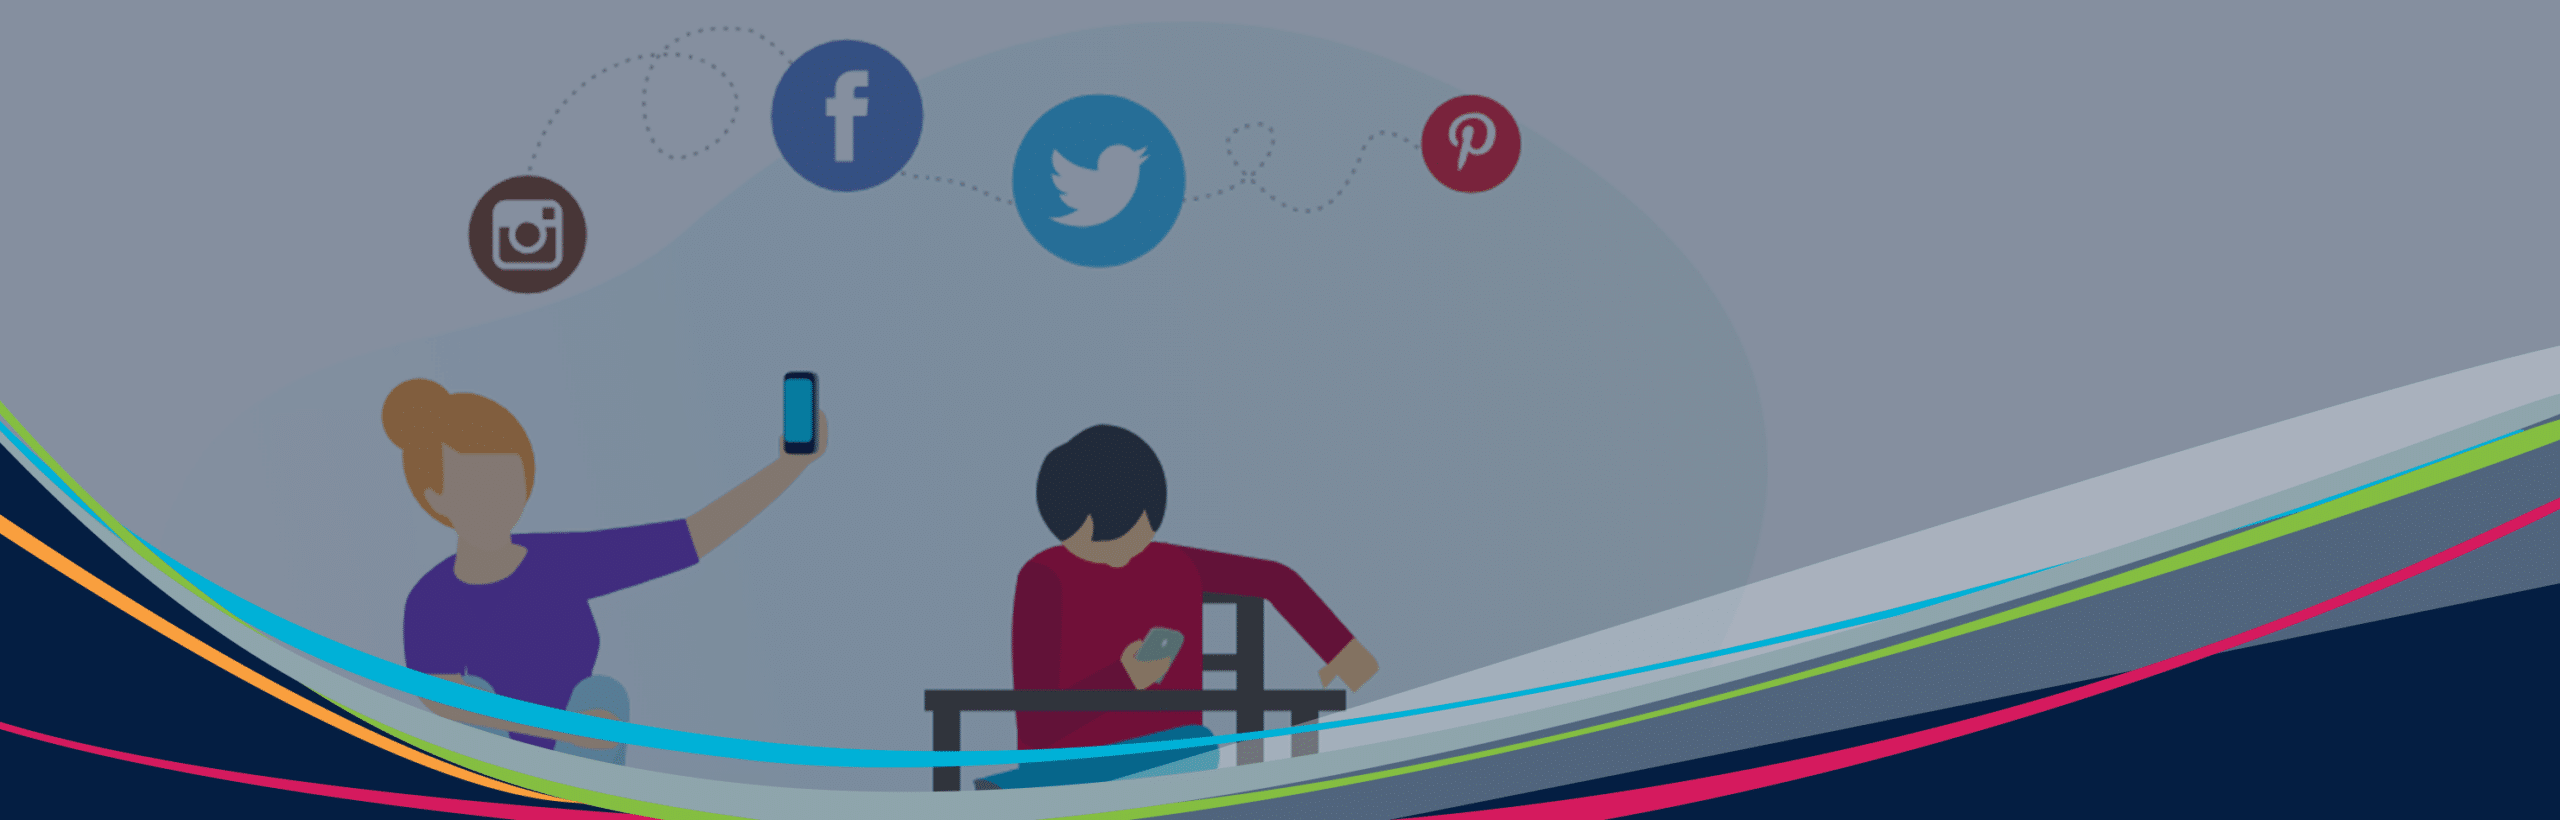 Grafica illustrata di Hero di studenti con dispositivi e icone di social media fluttuanti sullo sfondo